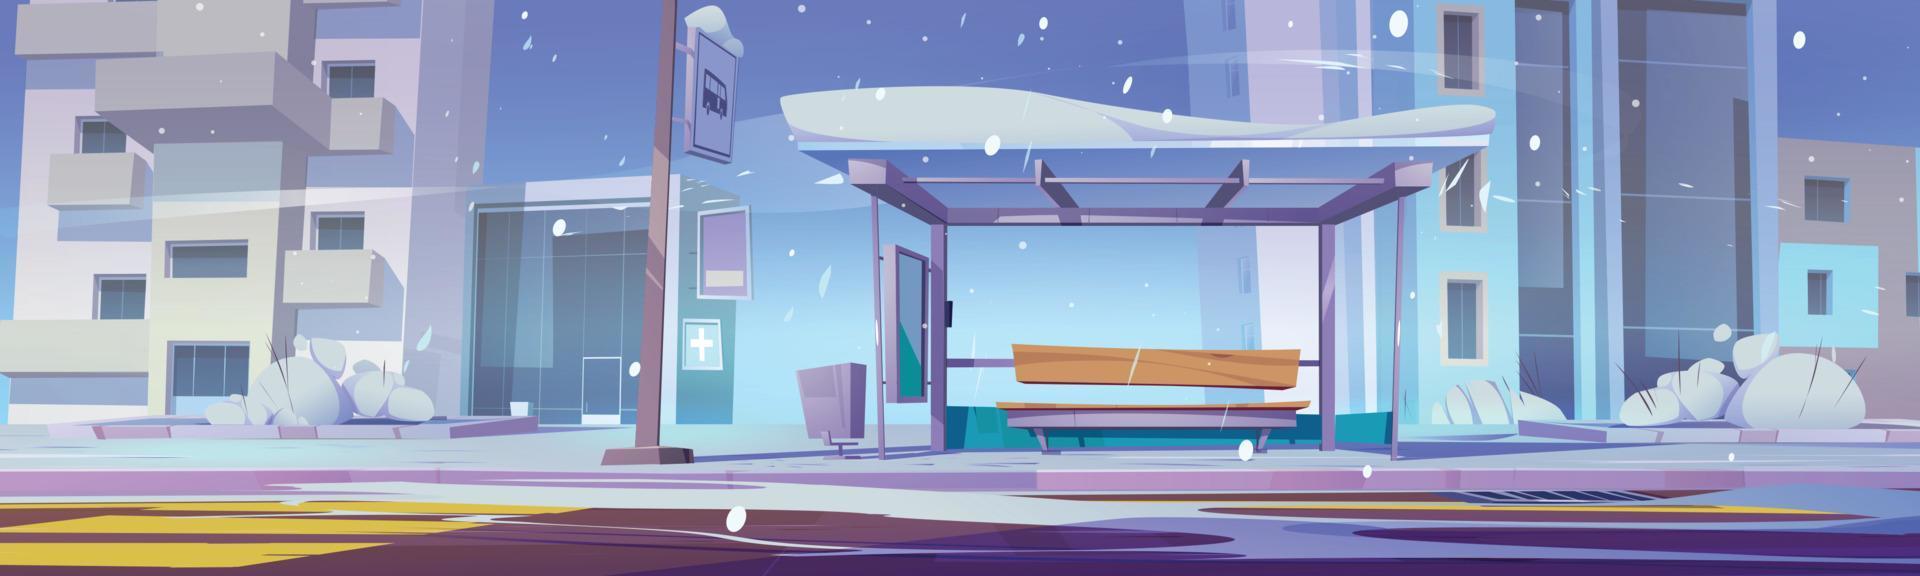 leeg bus hou op in winter stad, tekenfilm vector